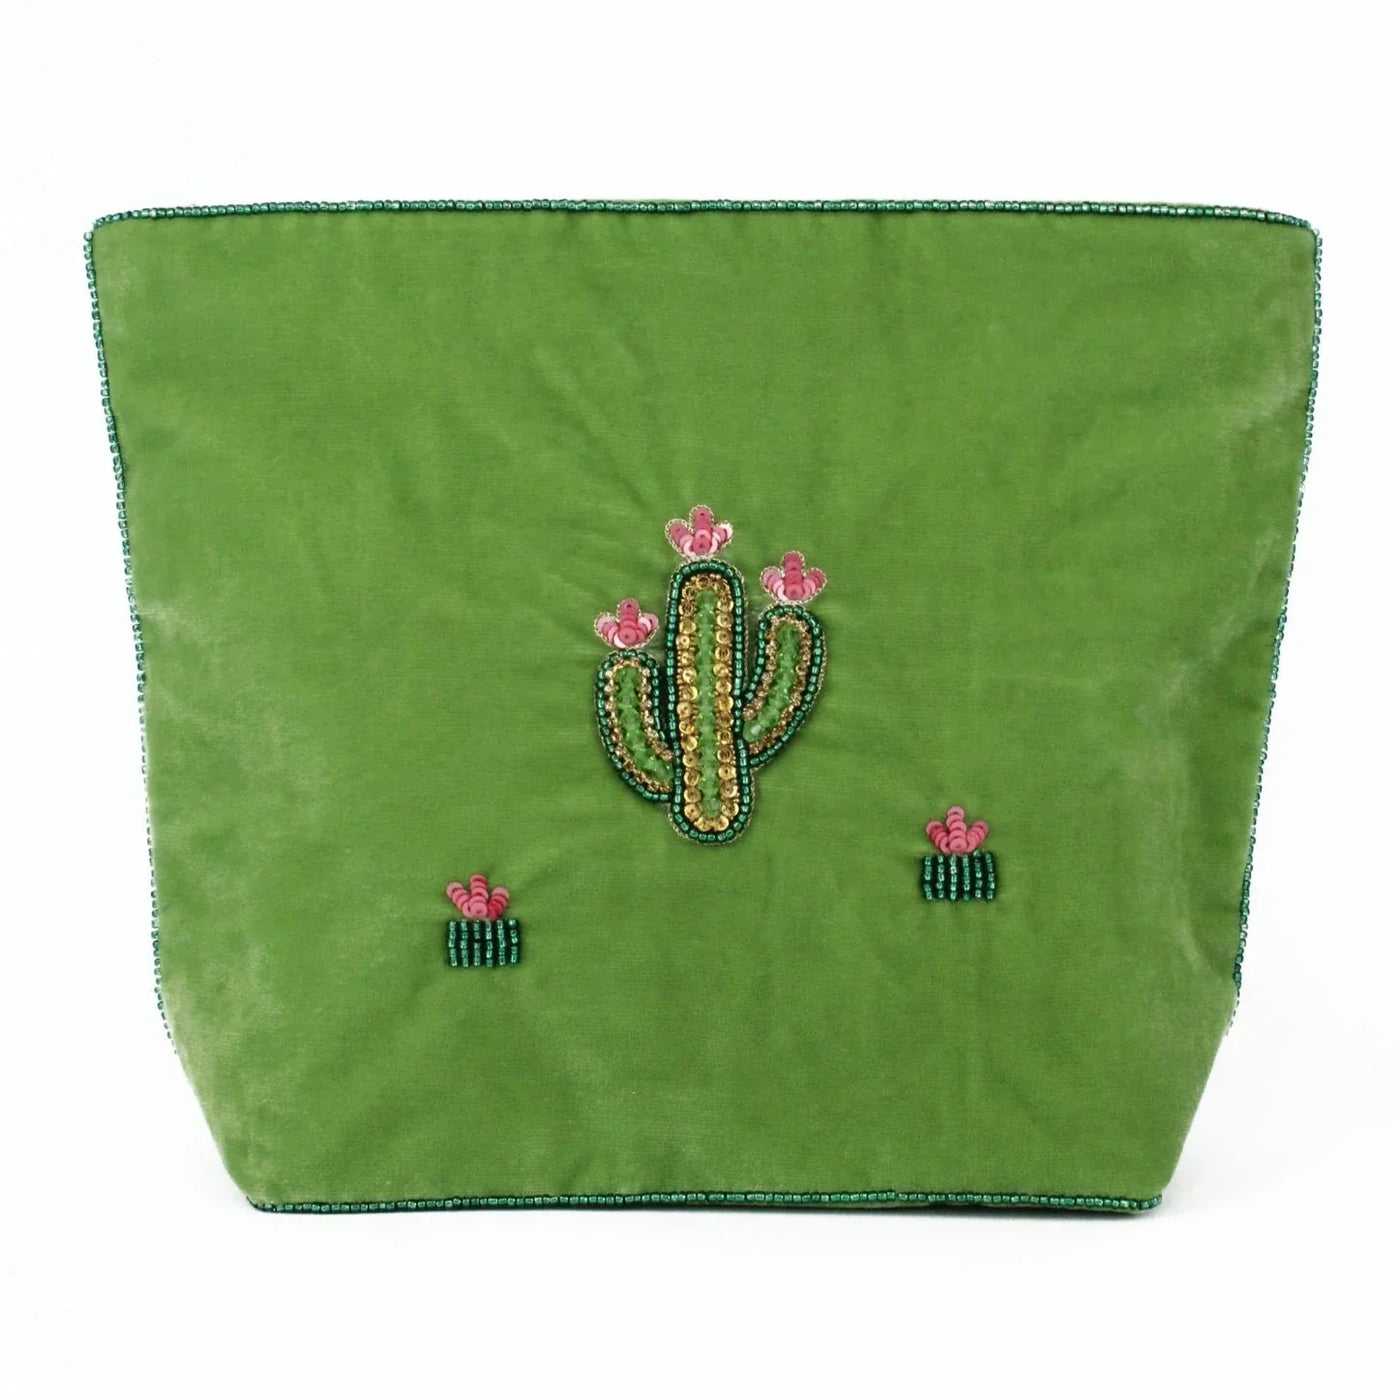 My Doris - Cactus Make Up Bag